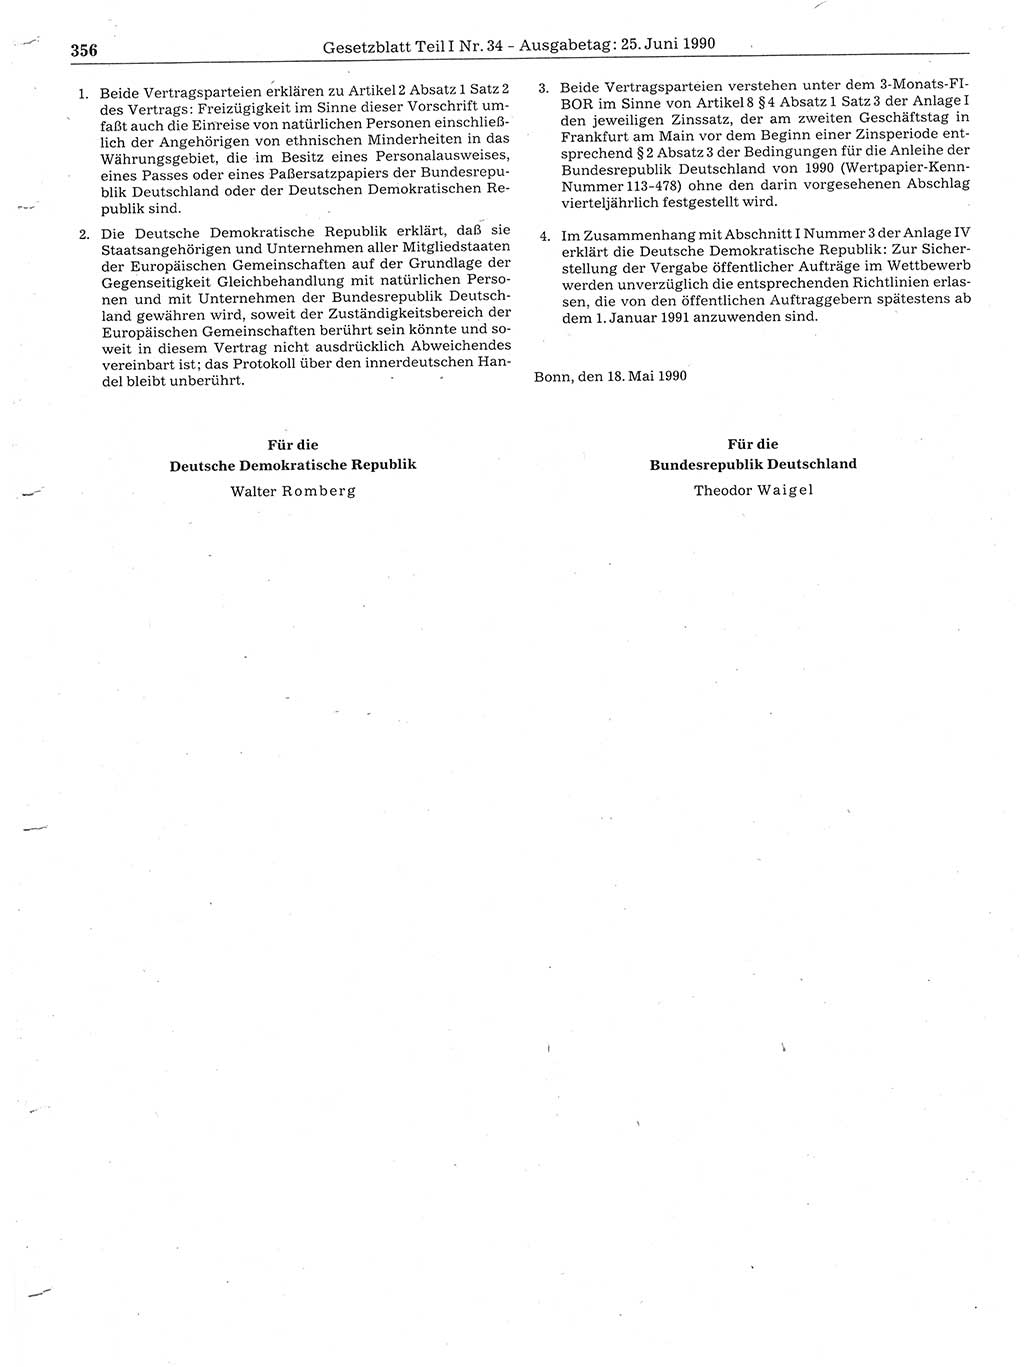 Gesetzblatt (GBl.) der Deutschen Demokratischen Republik (DDR) Teil Ⅰ 1990, Seite 356 (GBl. DDR Ⅰ 1990, S. 356)